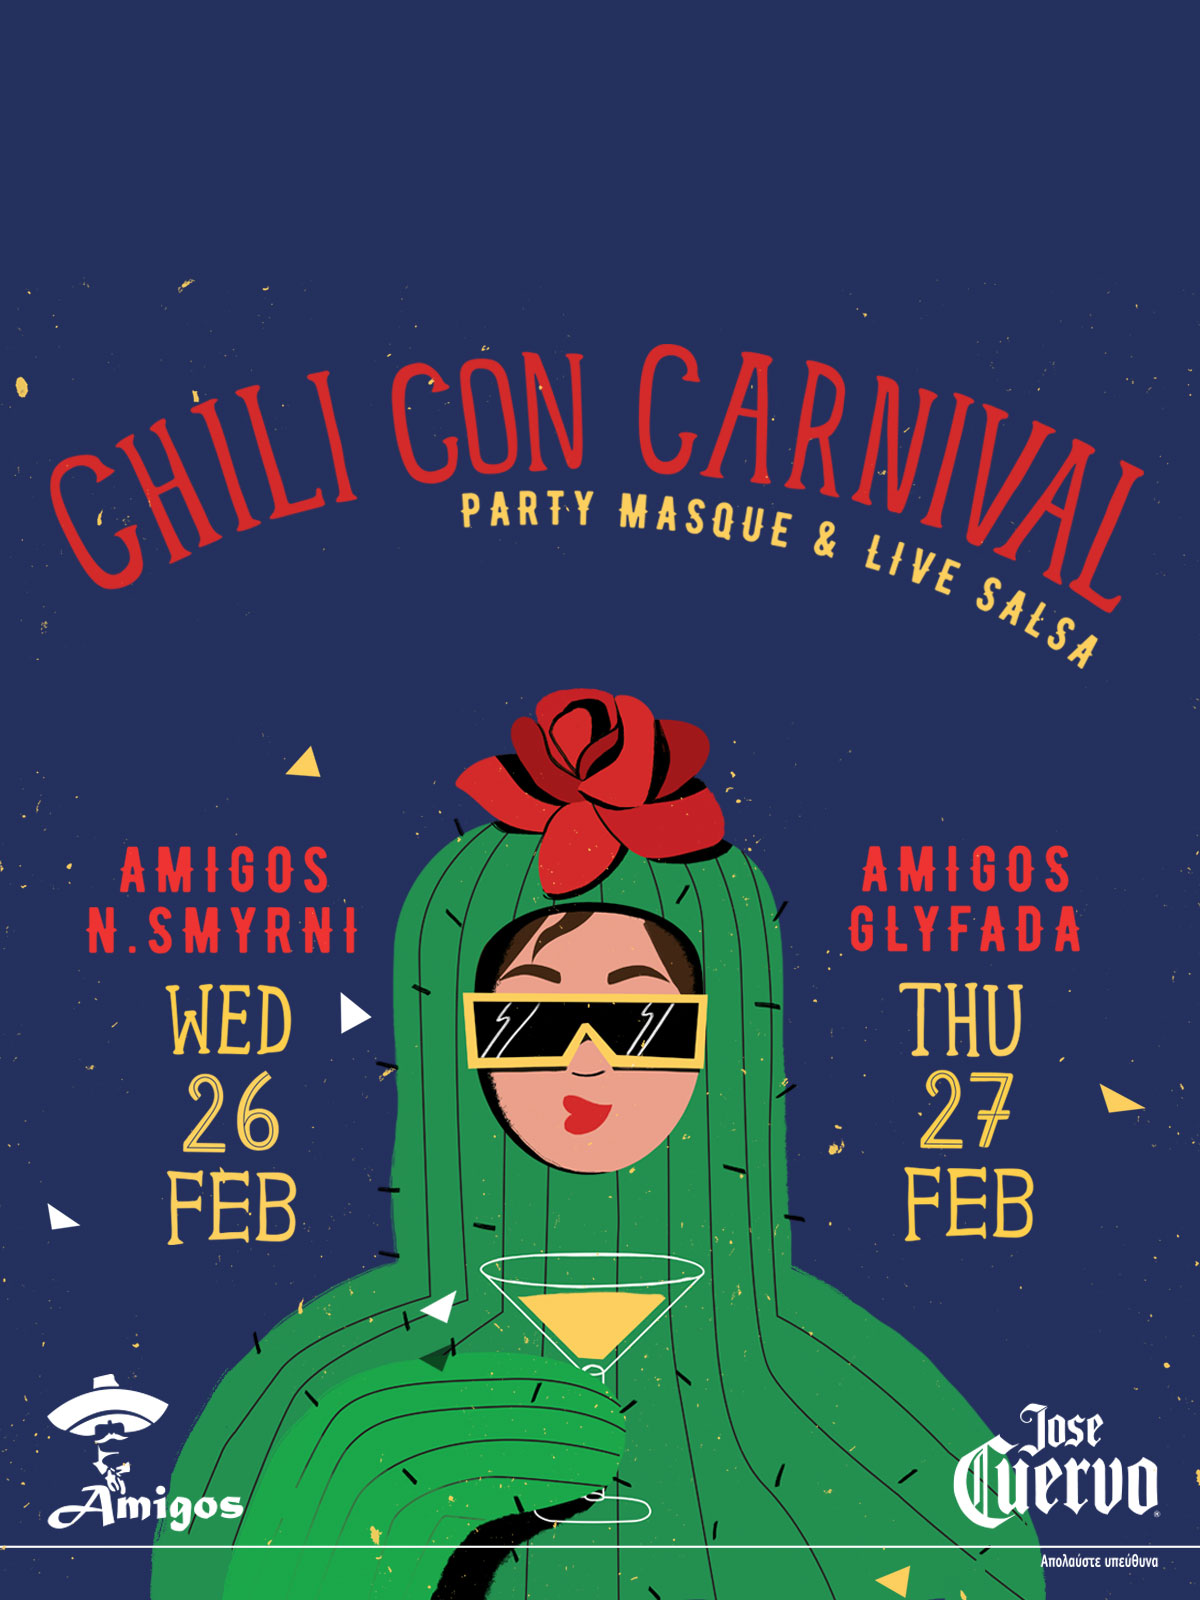 Chili con Carnival parties 2020